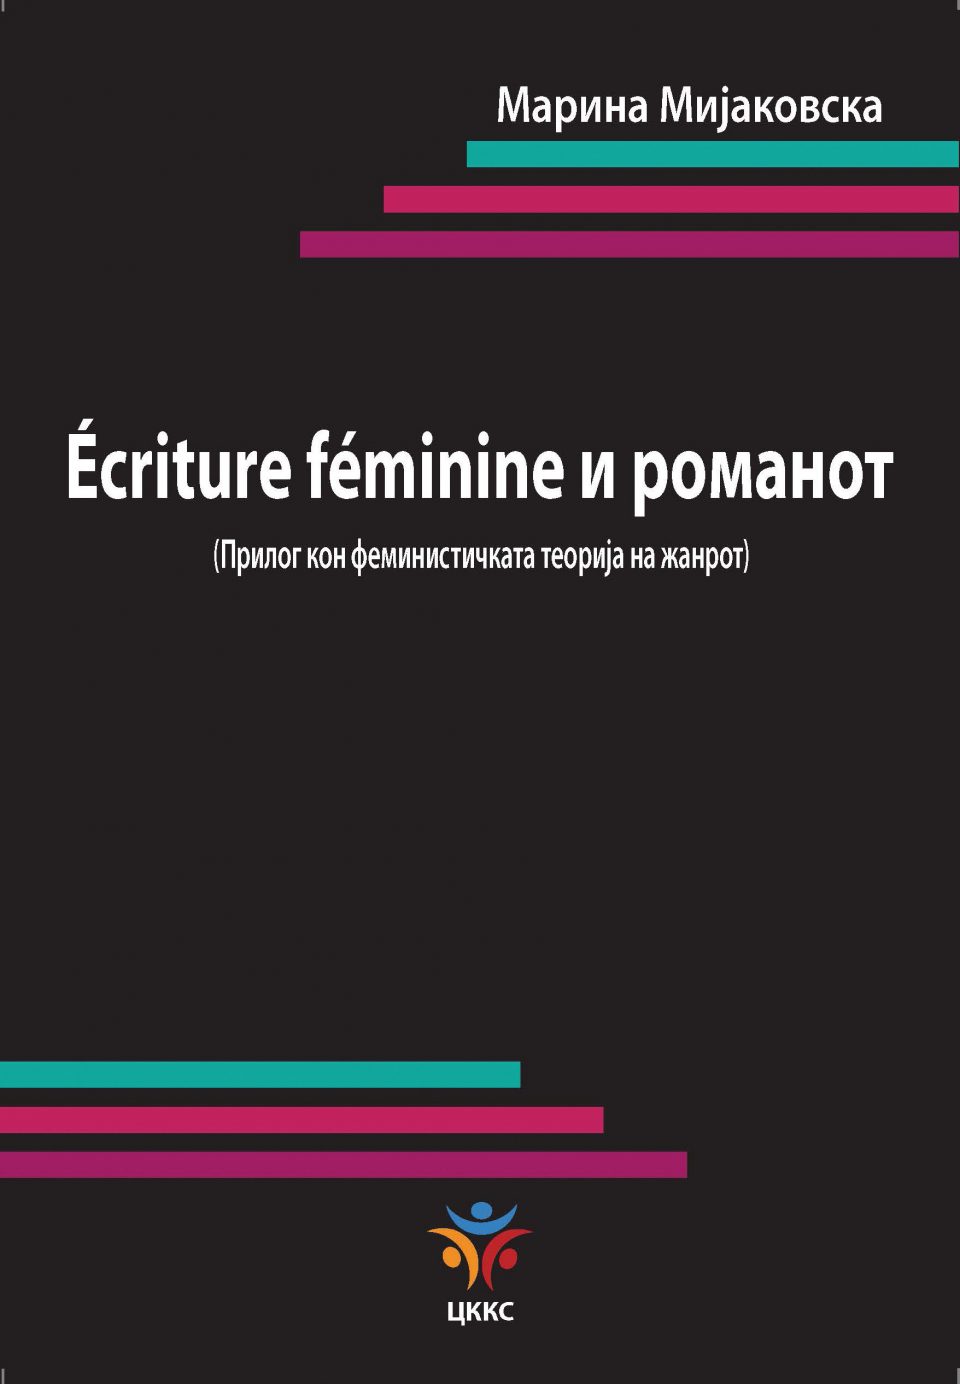 „Écriture féminine и романот: Прилог кон феминистичката теорија на жанрот“-нова книга од Марина Мијаковска